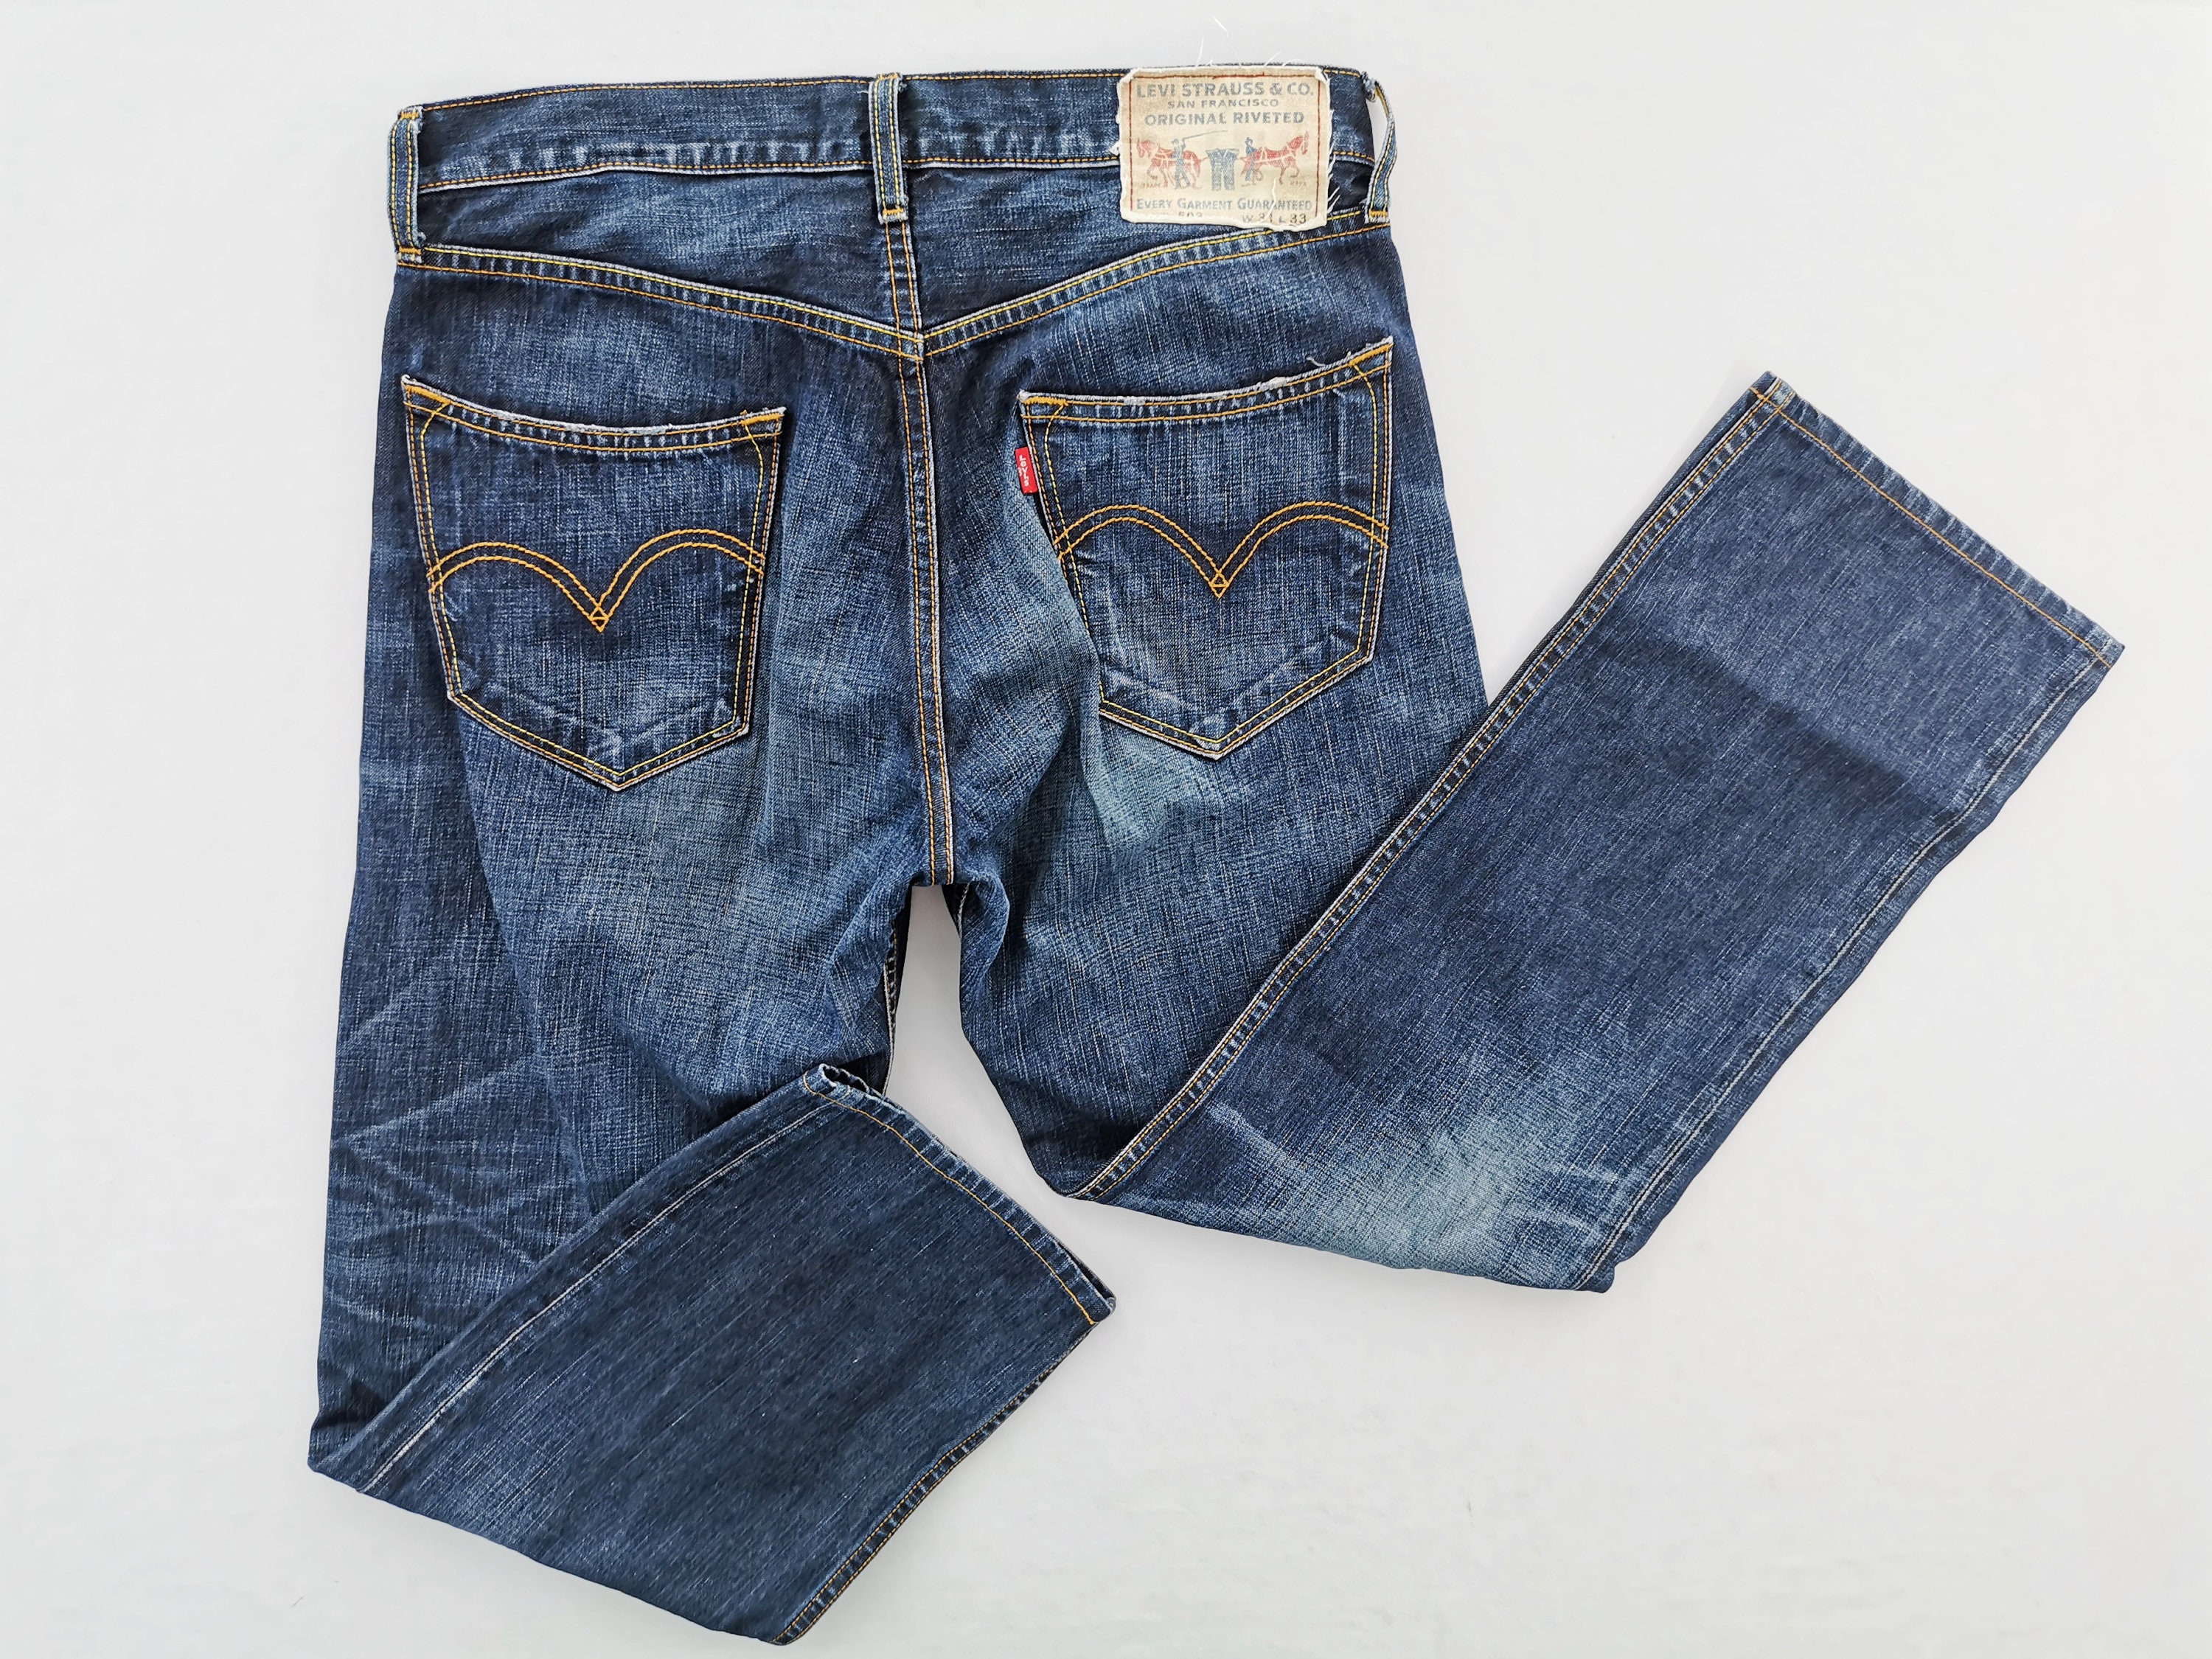 Levis 503 Jeans Distressed Size 31 Levis 503 Denim Pants Levis - Etsy UK